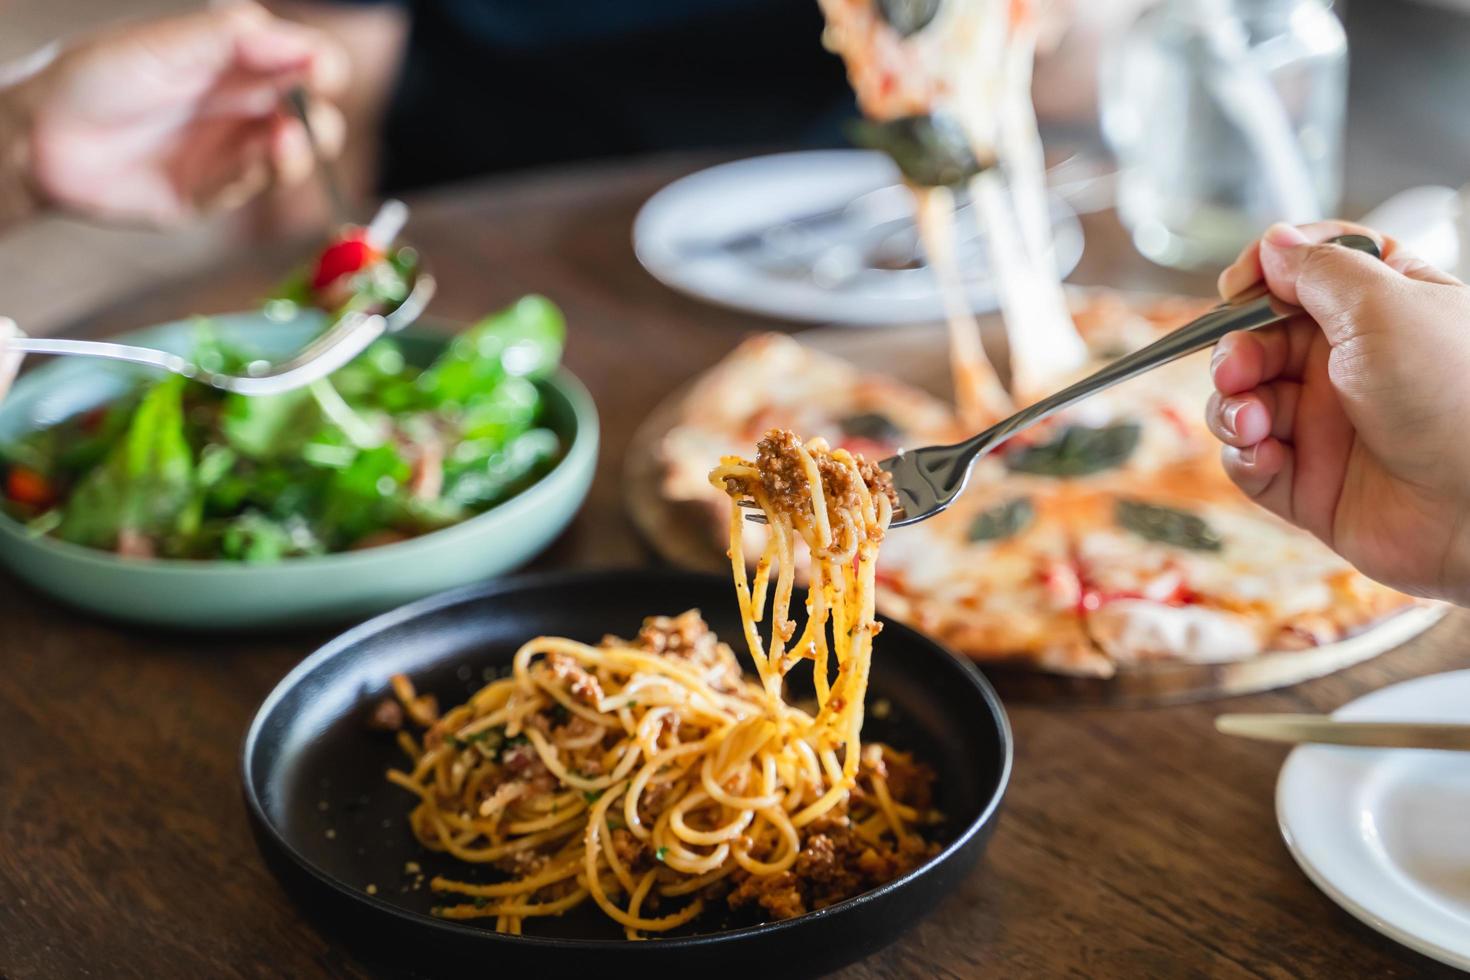 família ou amigos comendo comida juntos. pessoas comendo macarrão de comida italiana, pizza, salada na mesa. foto